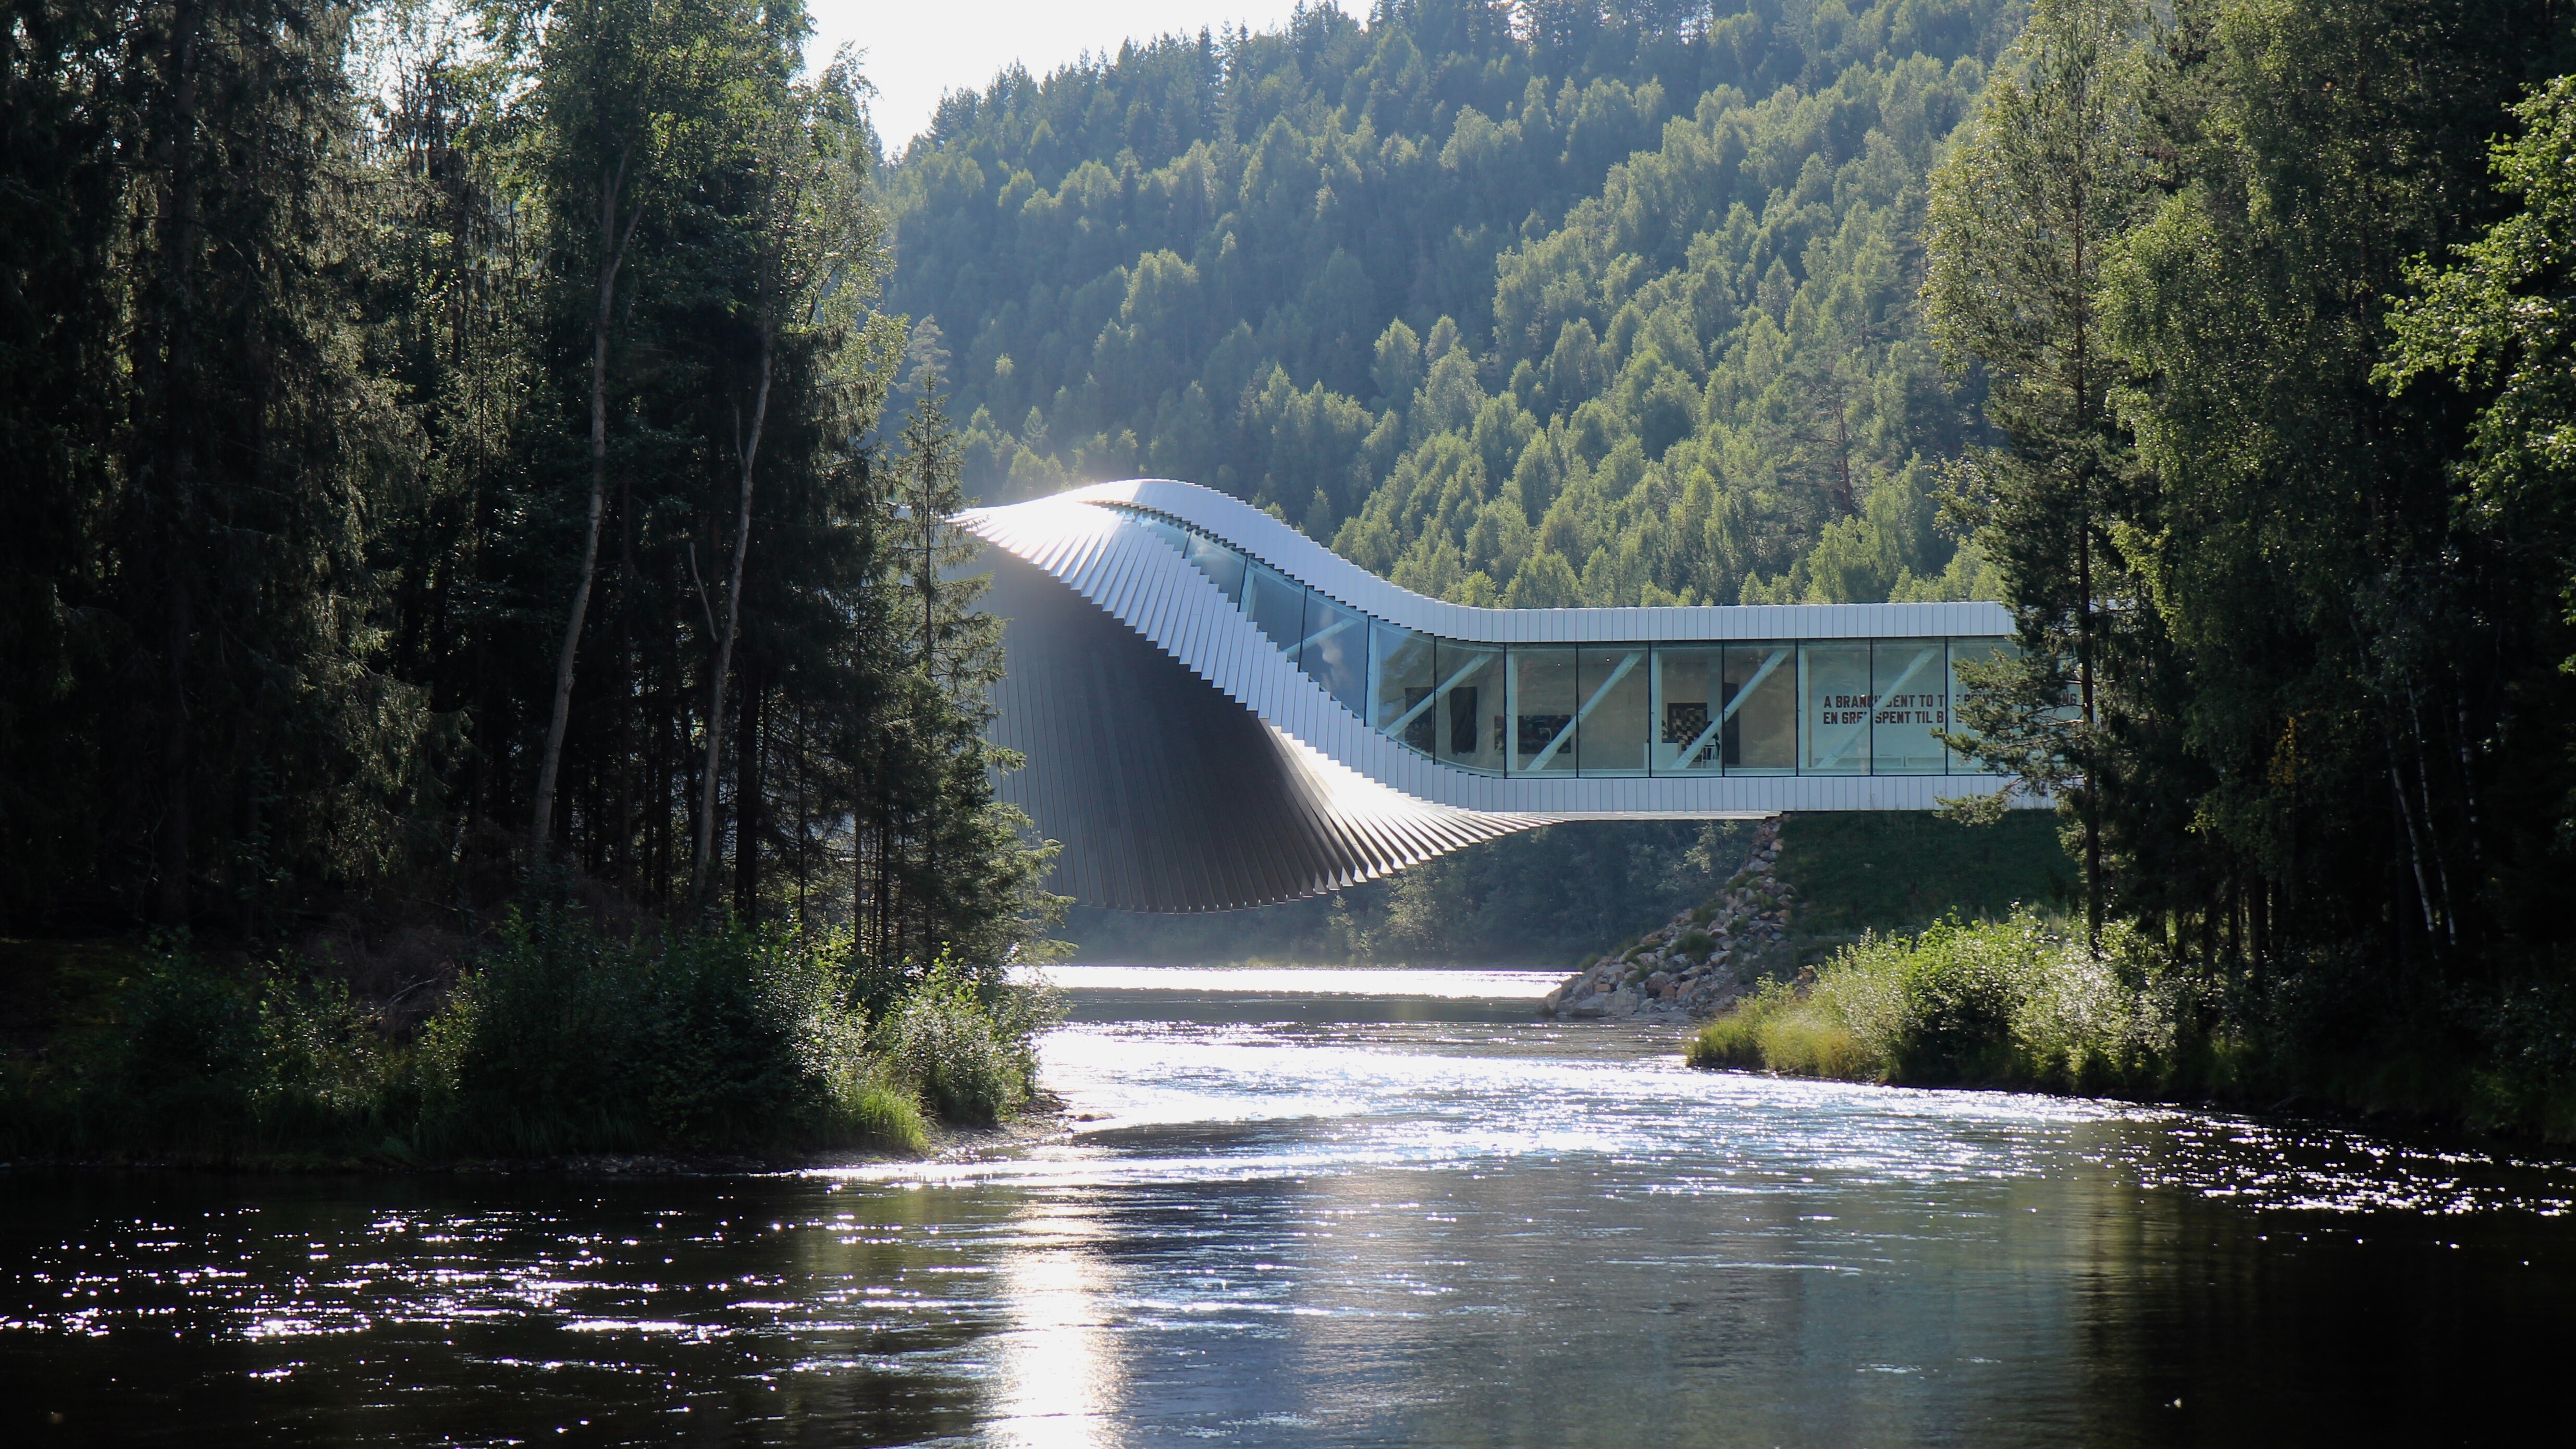 Nachhaltige Brückengalerie namens Twist in Kistefos in Norwegen